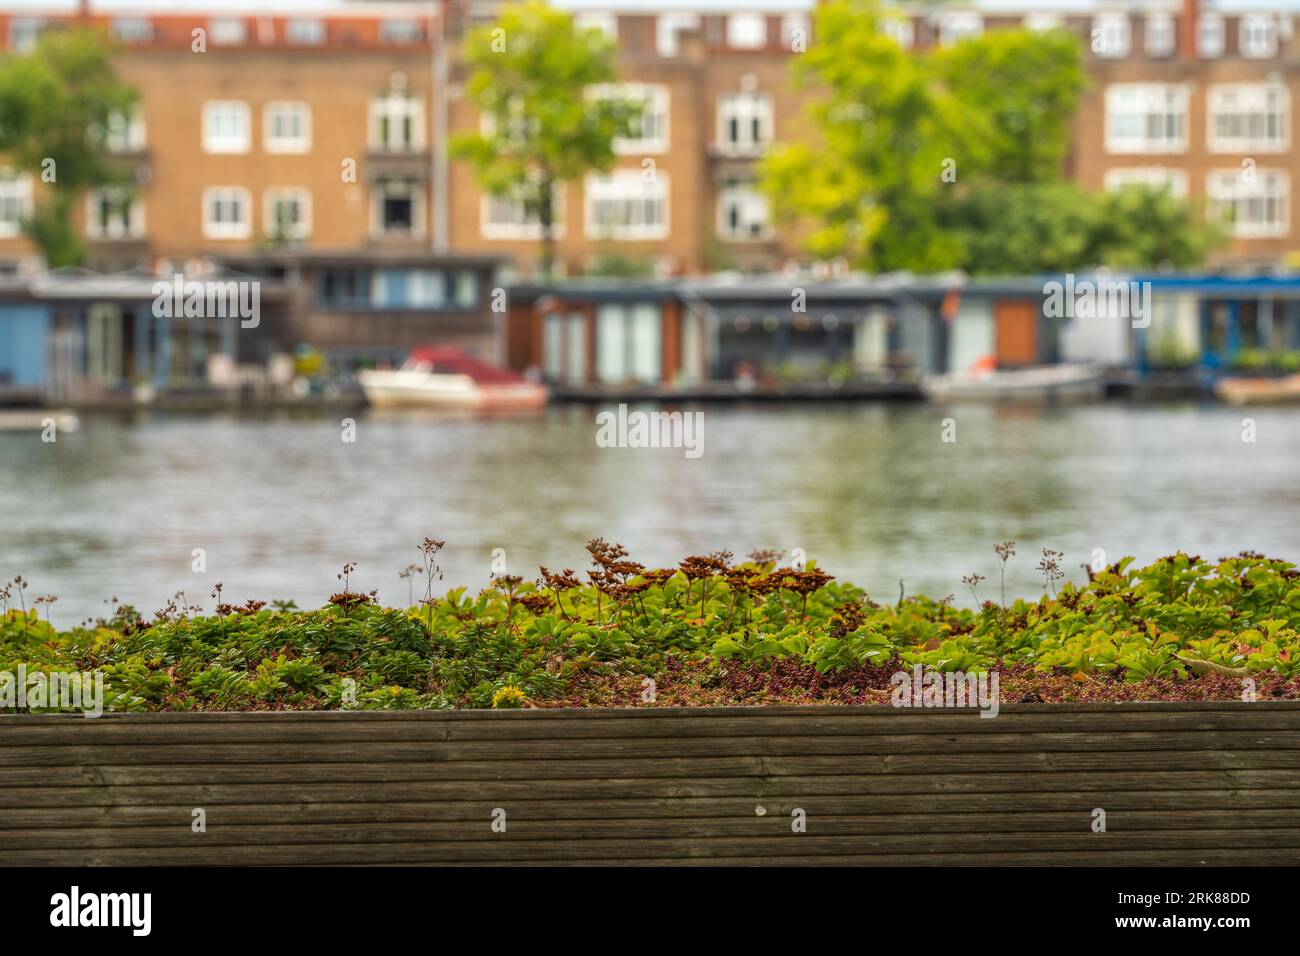 Détail du toit vert et vivant avec variété de plantes. Rivière Amstel et péniches en arrière-plan, focalisation sélective Banque D'Images